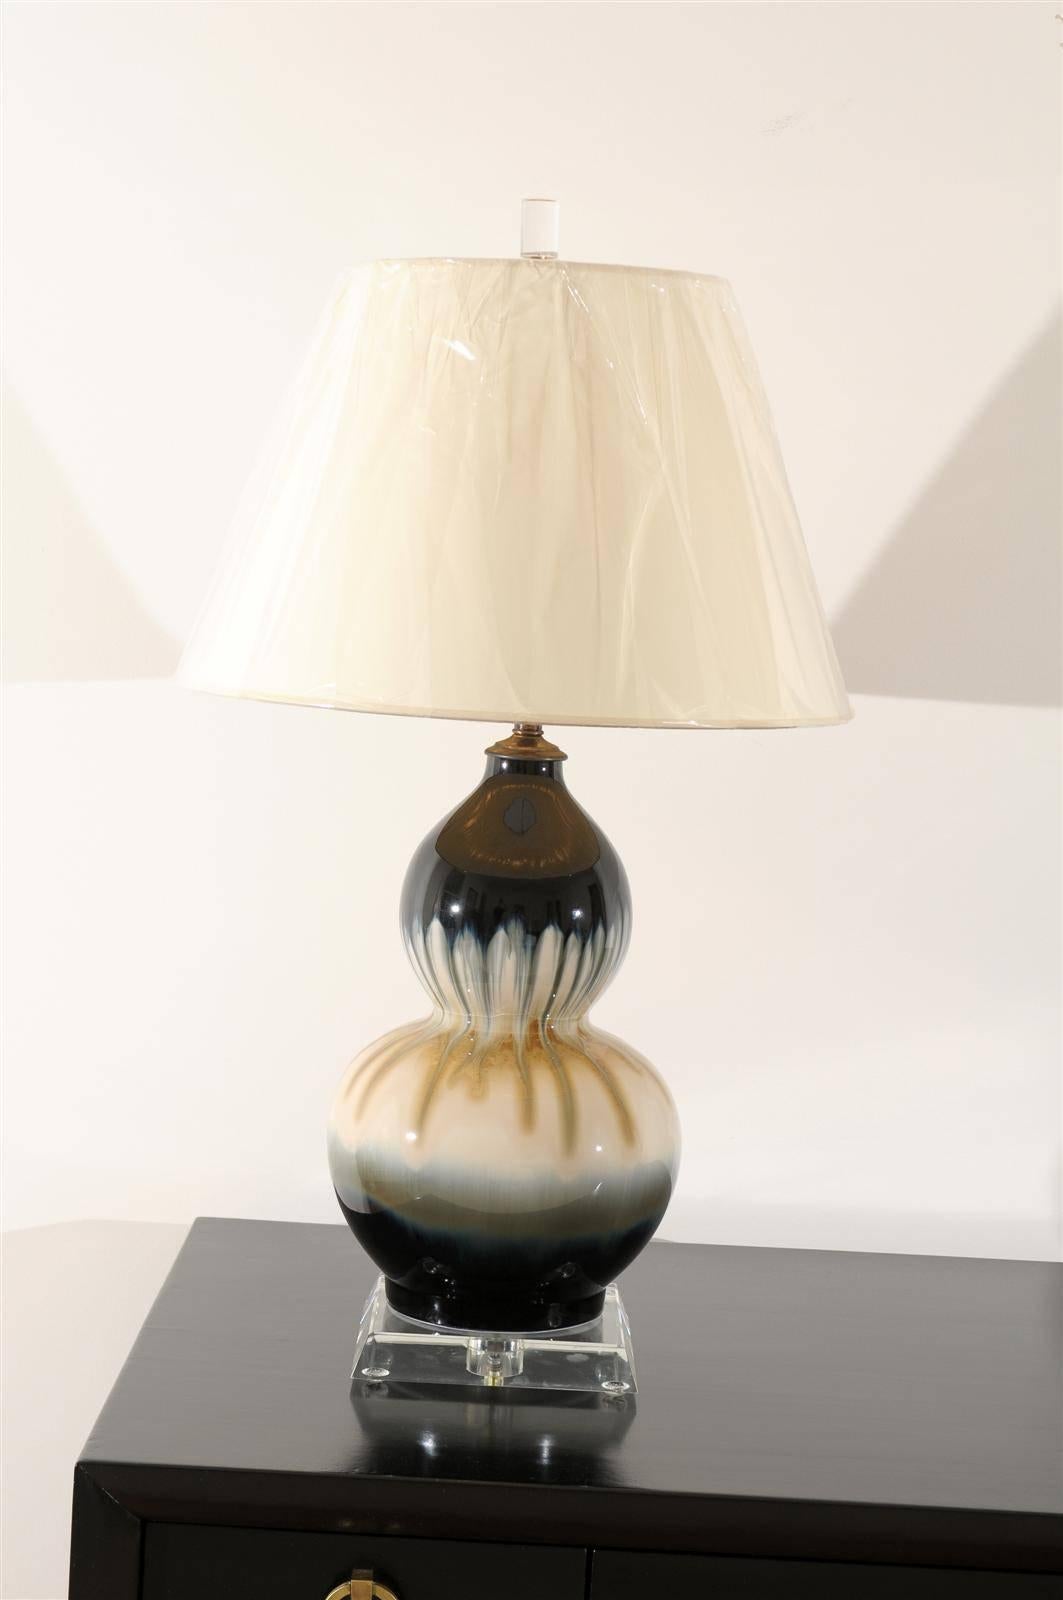 Ein atemberaubendes Paar Vintage-Keramik-Doppelkürbislampen mit Tropfglasur, ca. 1980er Jahre. Außergewöhnliche Auswahl an Farben und Oberflächen. Erhabener Schmuck für jeden Raum. Ausgezeichneter restaurierter Zustand. Die Lampen wurden neu